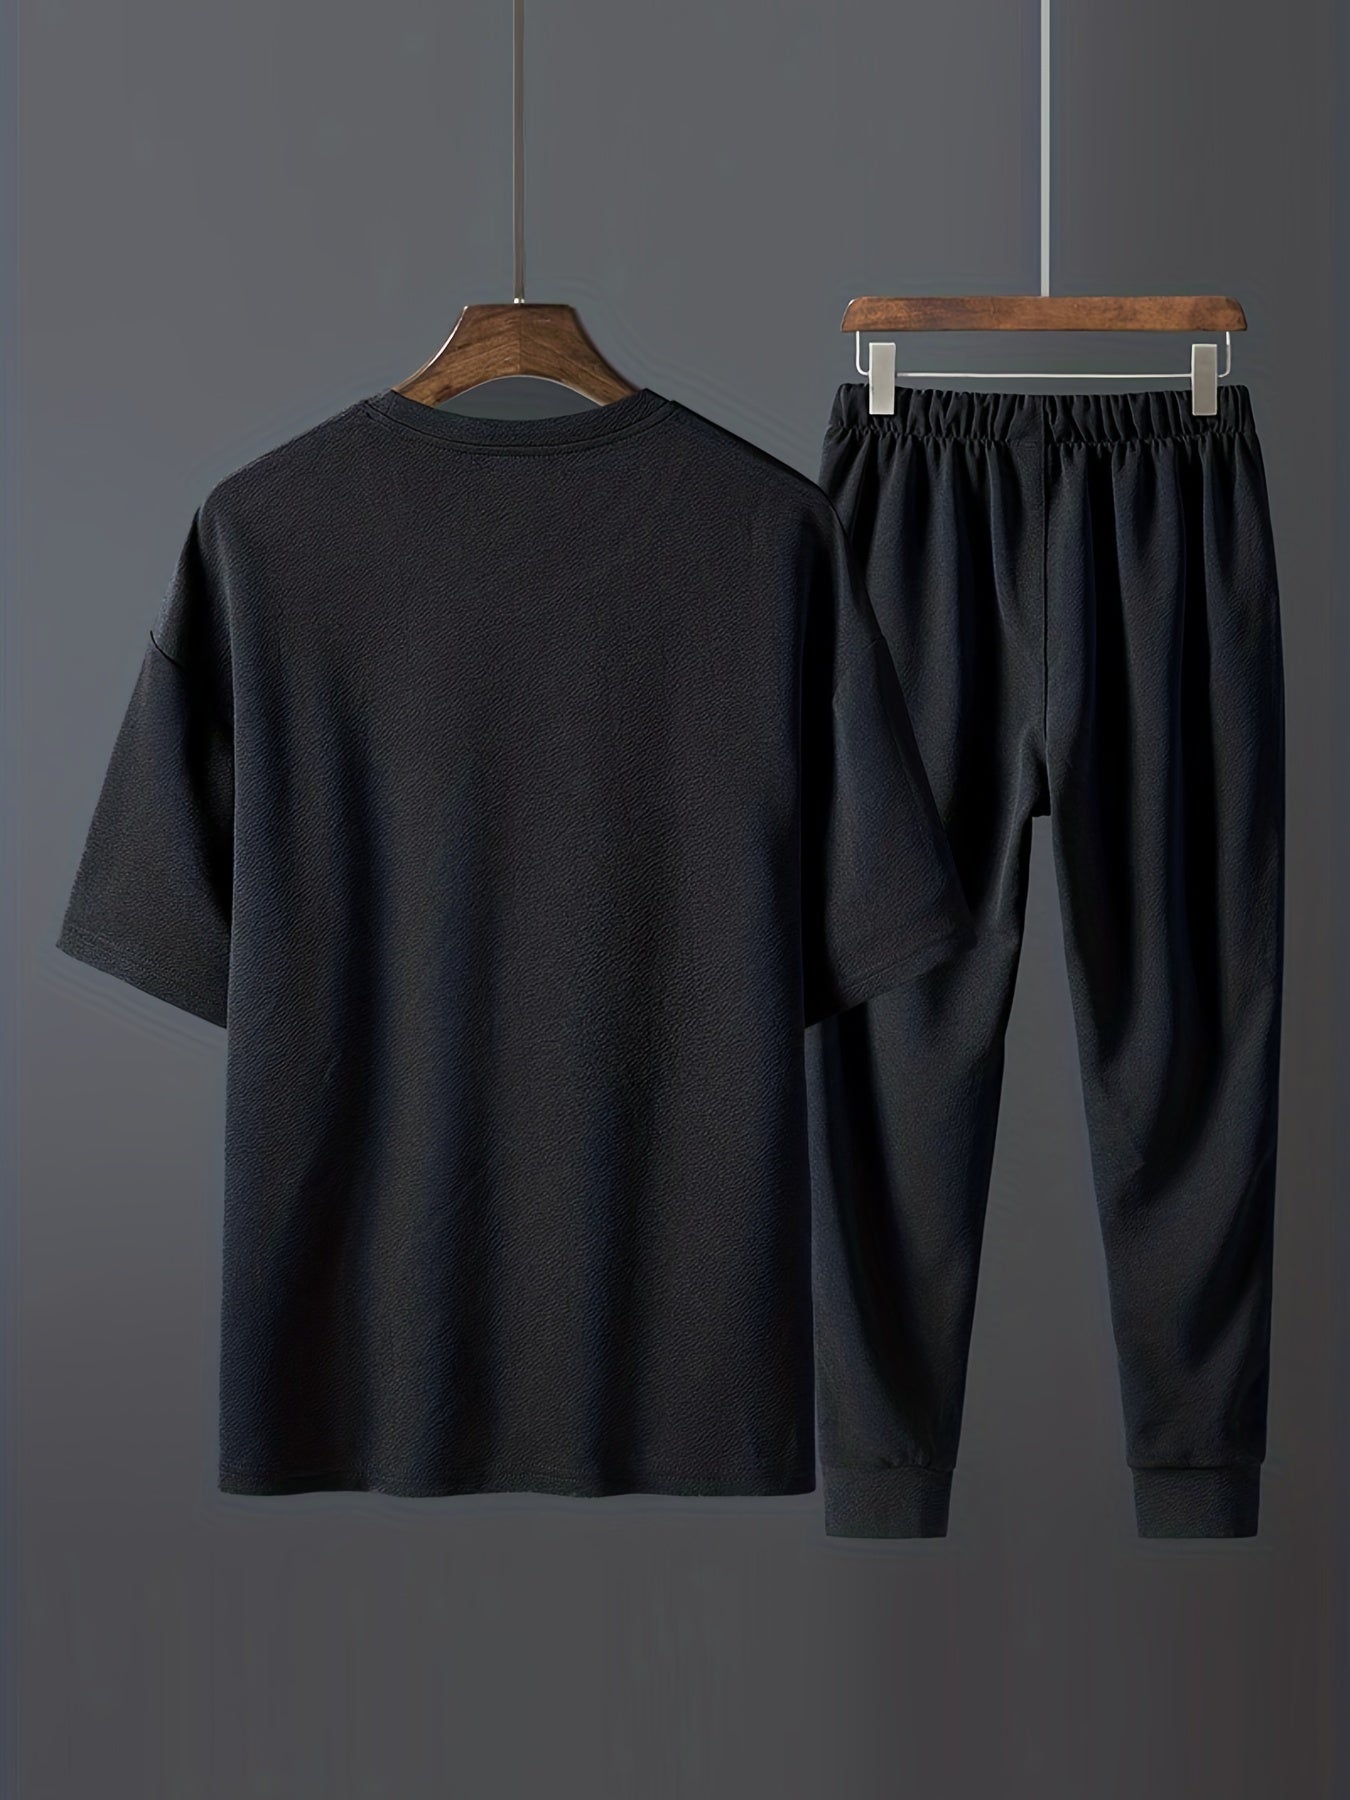 Men's 2Pcs, Casual Loose T-shirt And Comfy Drawstring Jogger Pants Set